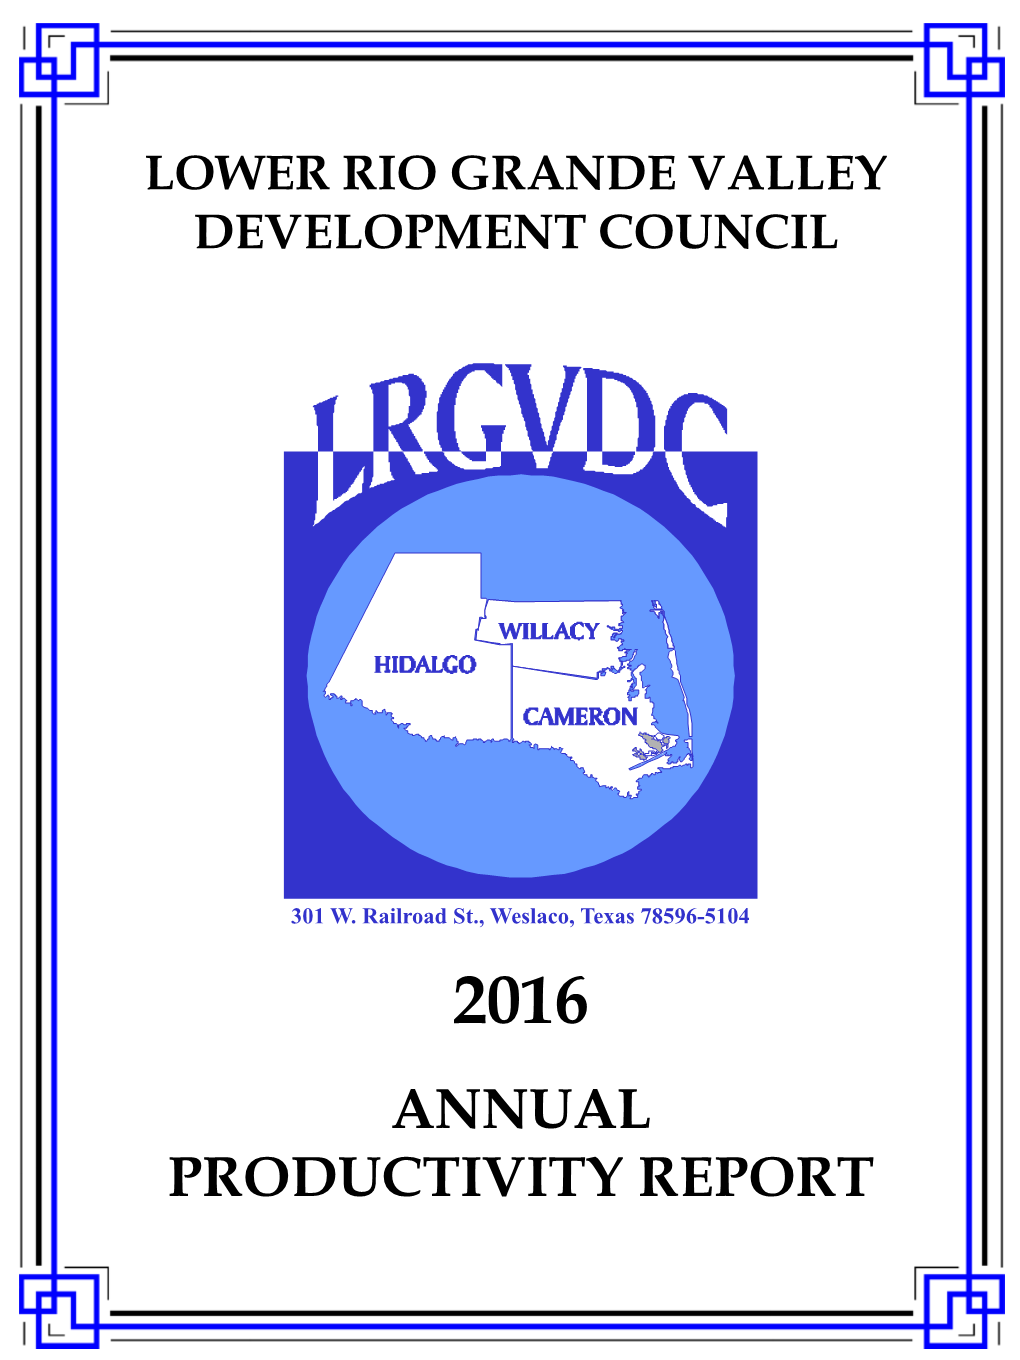 2016 Annual Productivity Report Lower Rio Grande Valley Development Council